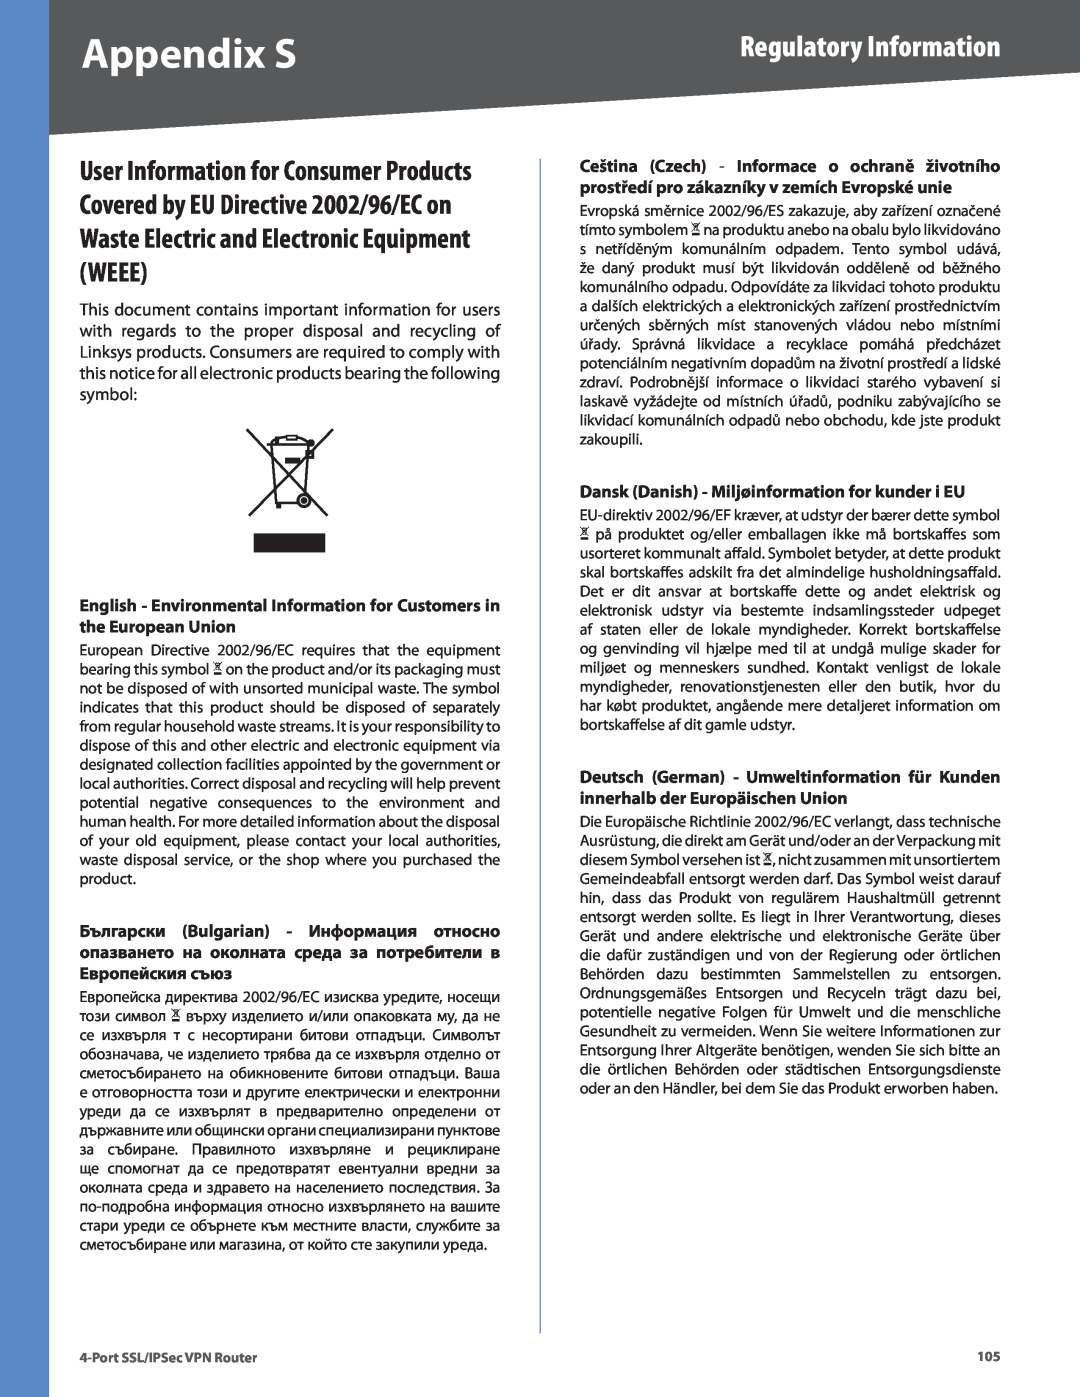 Cisco Systems RVL200 manual Regulatory Information, Dansk Danish - Miljøinformation for kunder i EU, Appendix S 